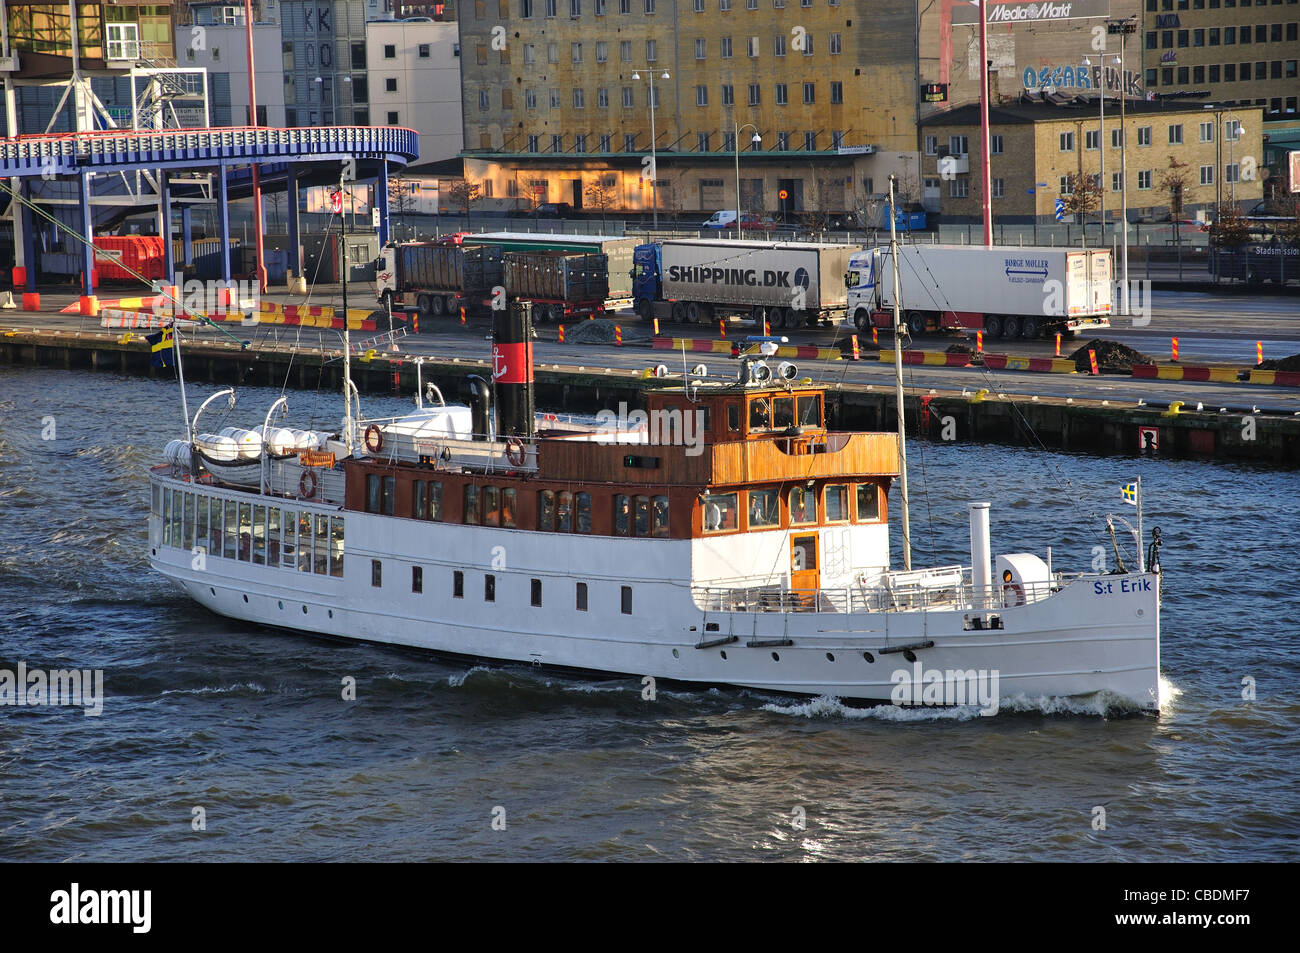 M/S St Erik steamer to Strömstad & Uddevall, Gothenburg Harbour, Gothenburg, Västergötland & Bohuslän, Kingdom of Sweden Stock Photo